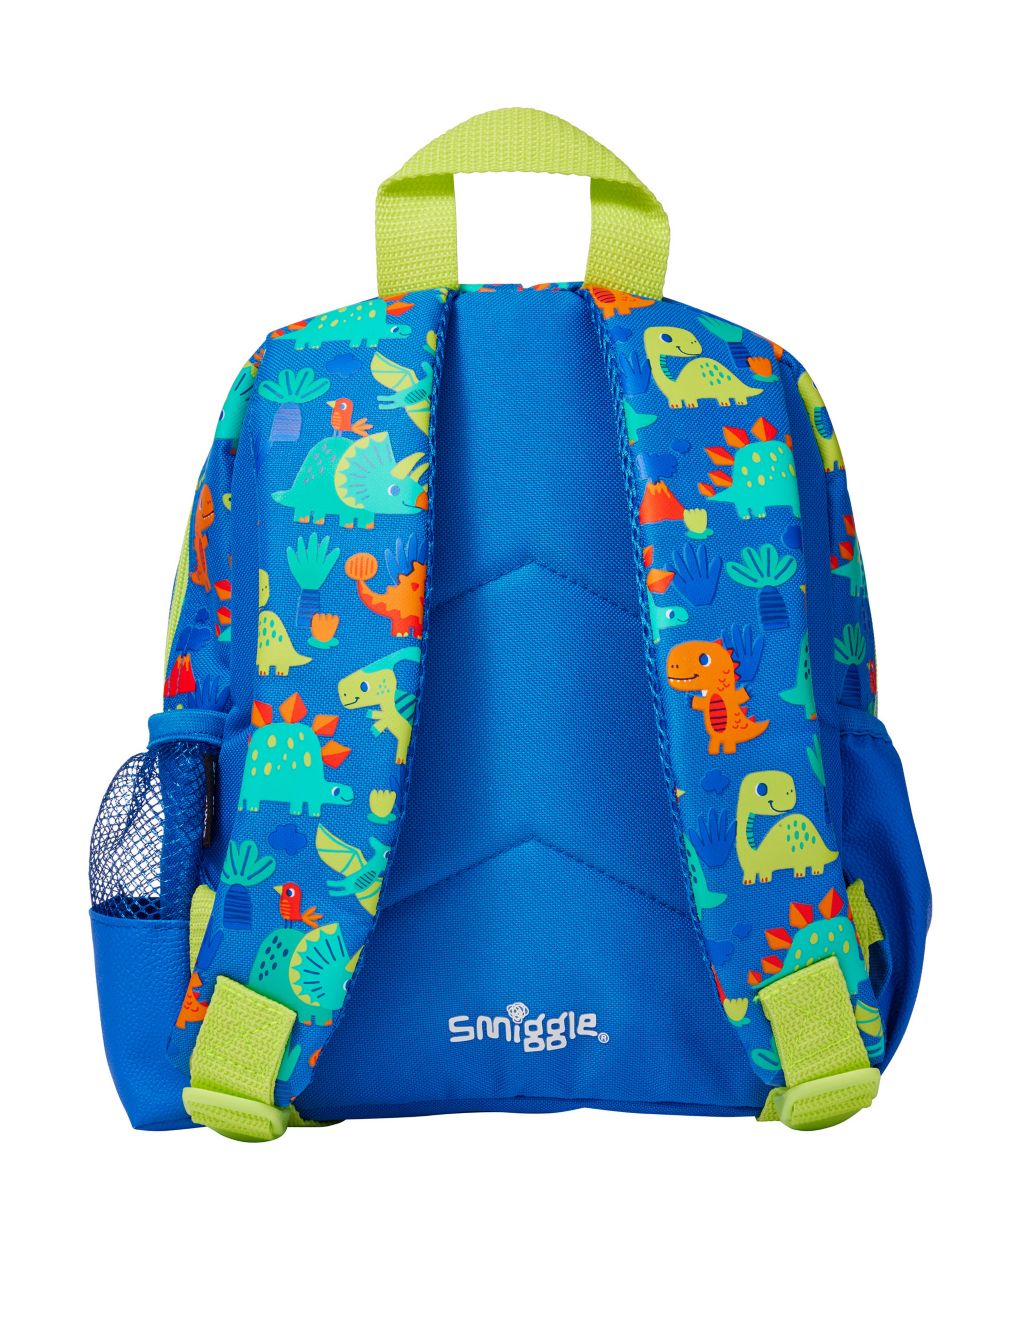 Kids' Patterned Backpack image 3